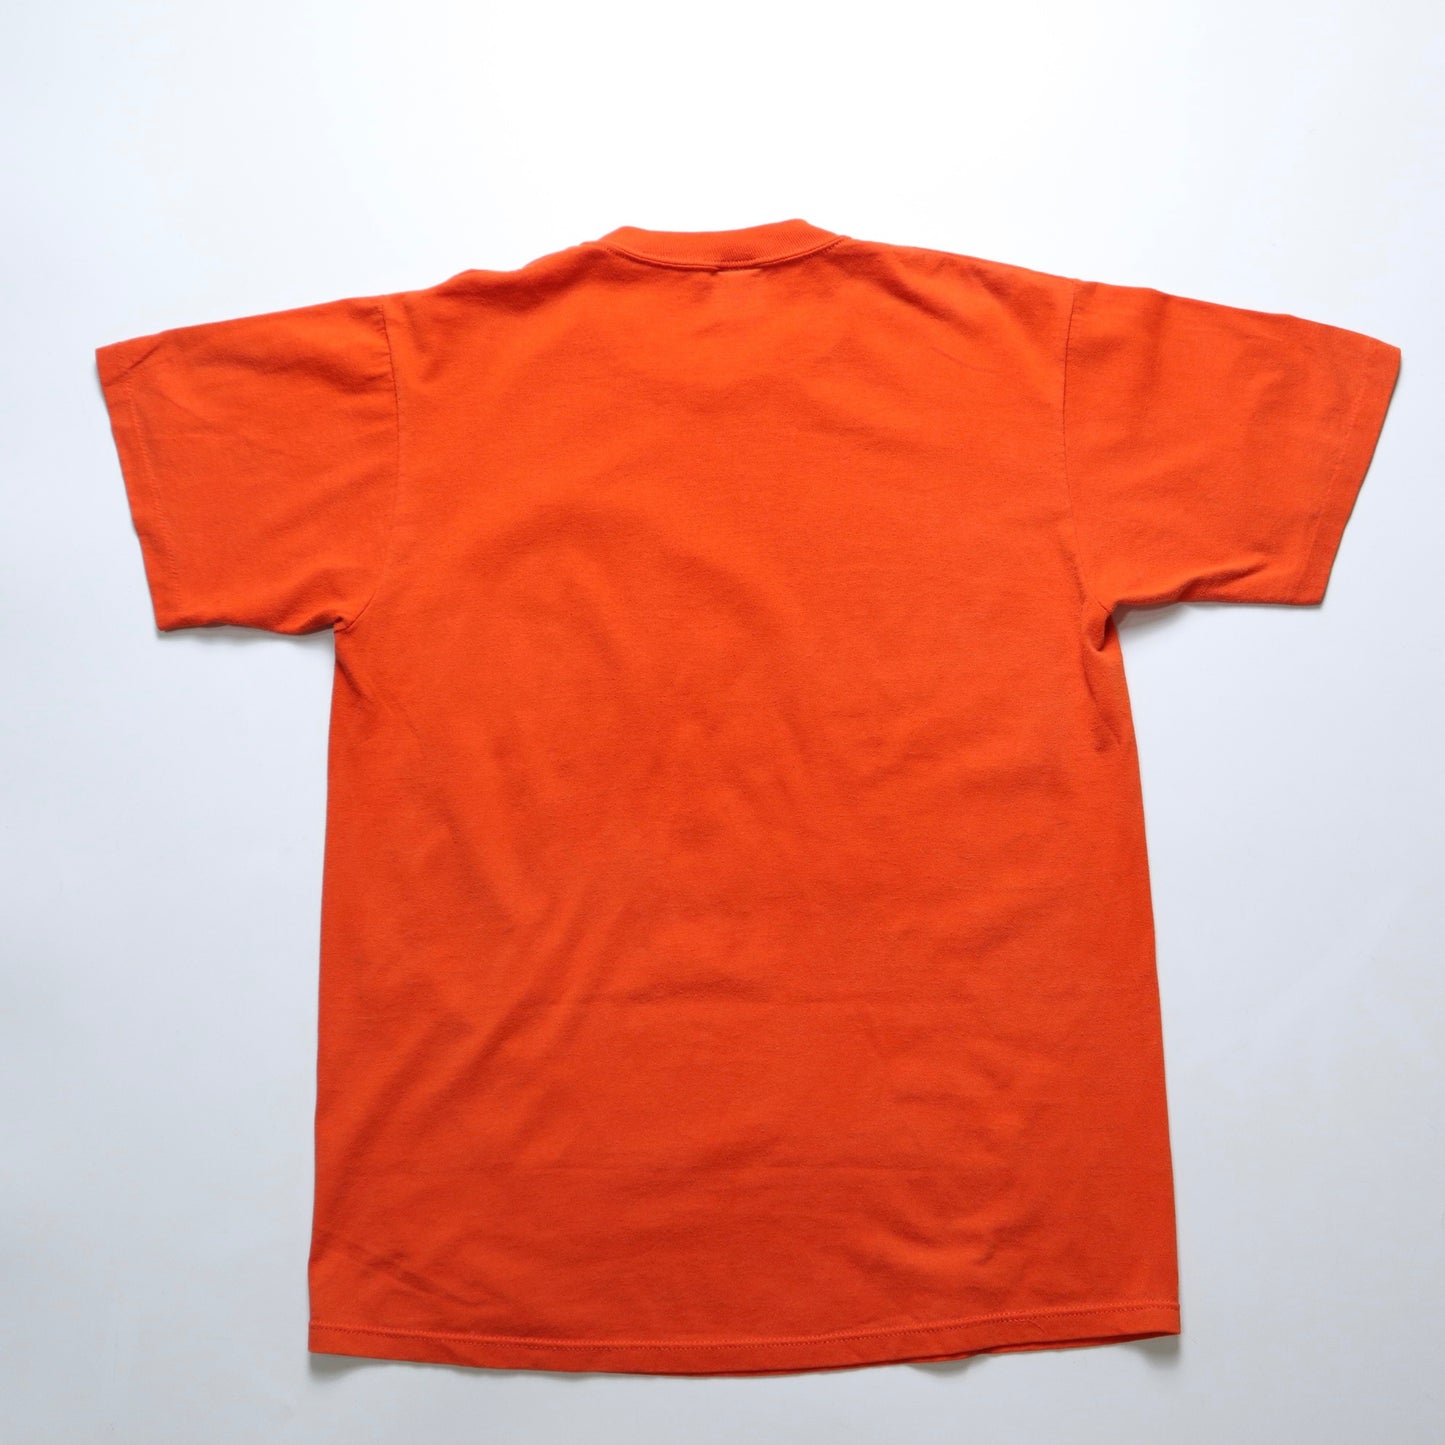 1980s American-made JERZEES Golden Gate T-Shirt